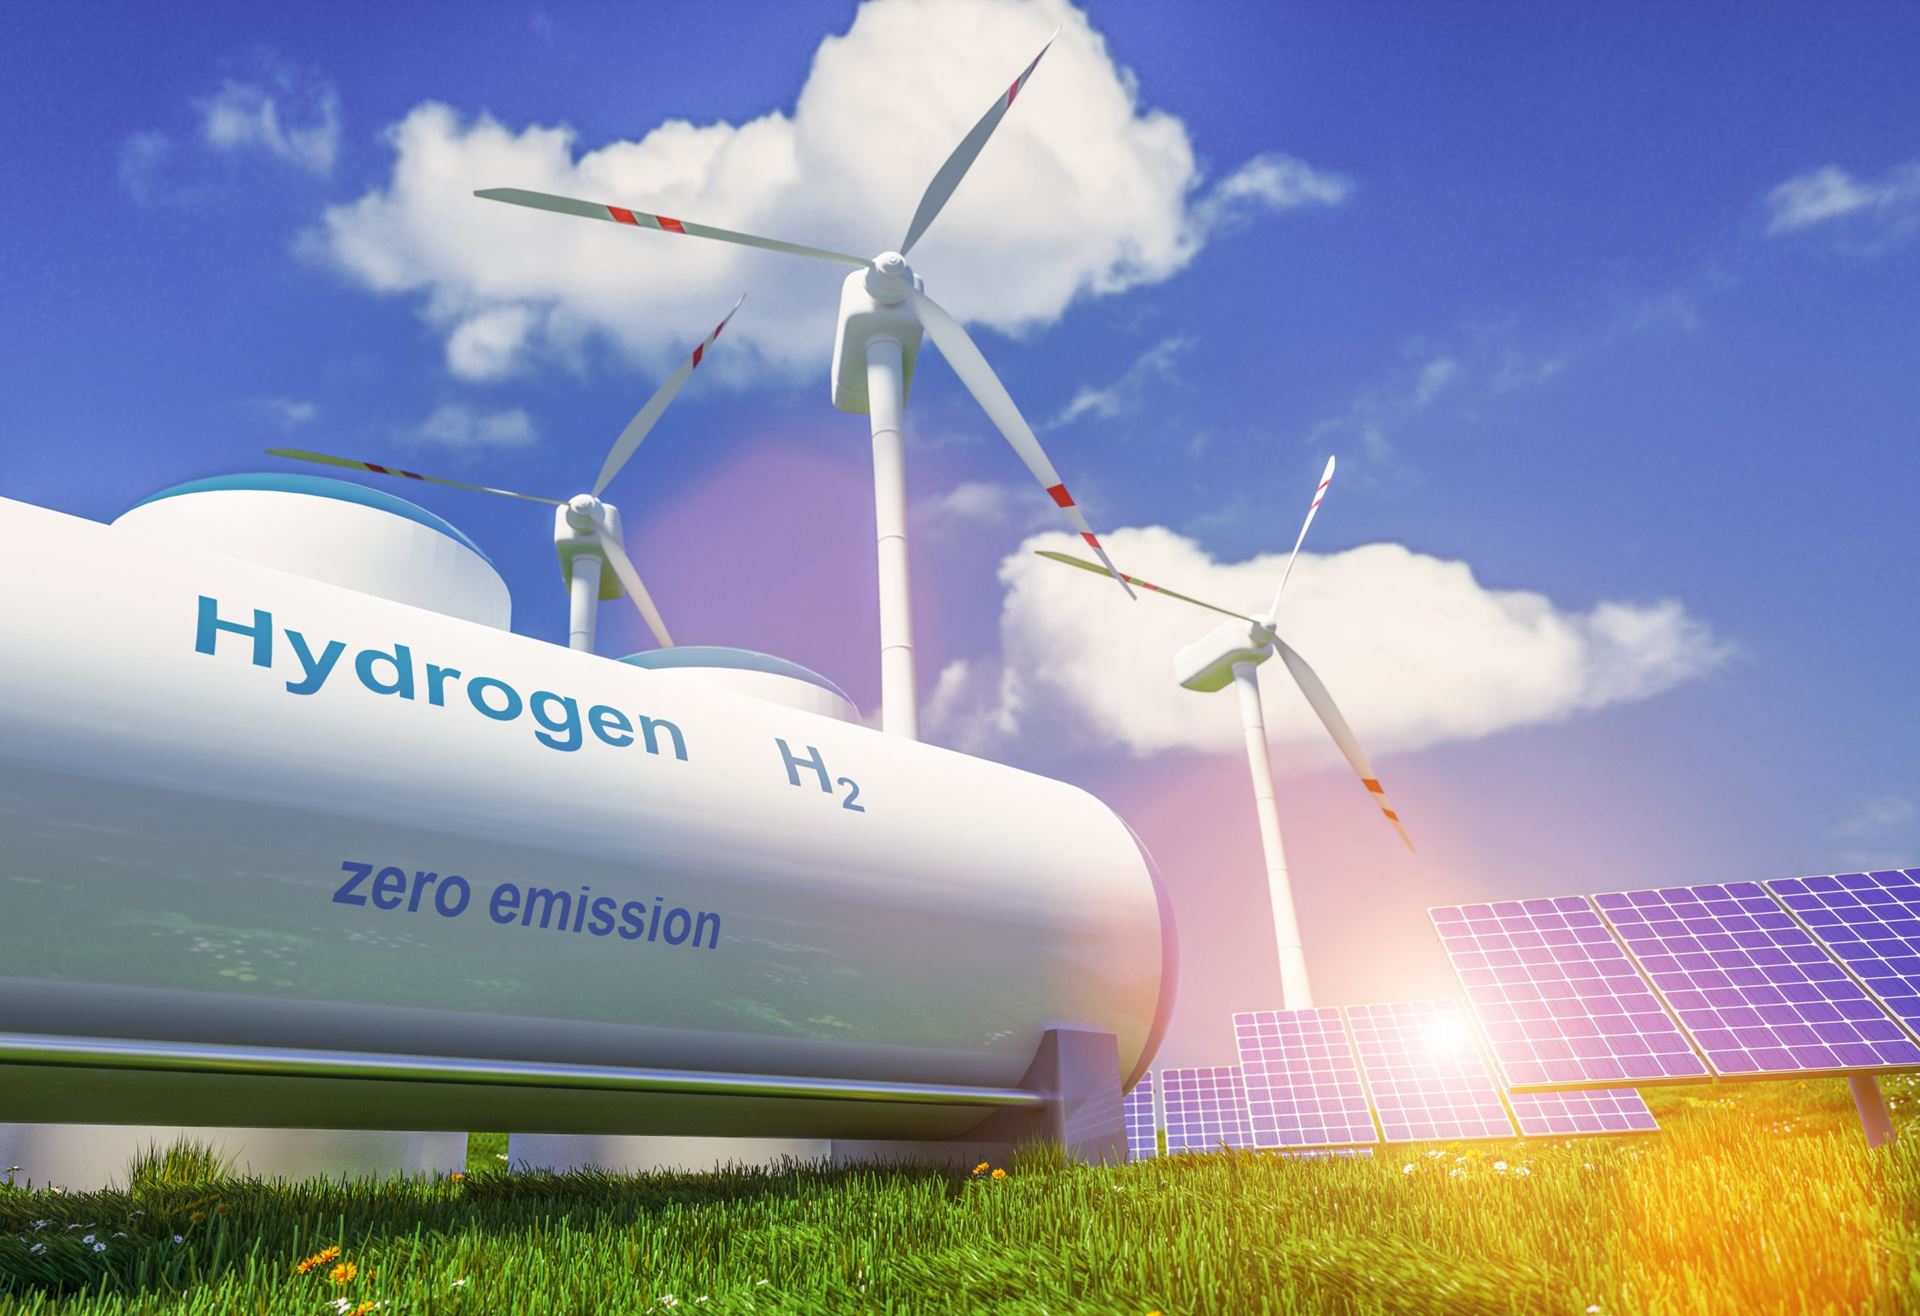 AB pazarı yeşil hidrojen alımını destekliyor 